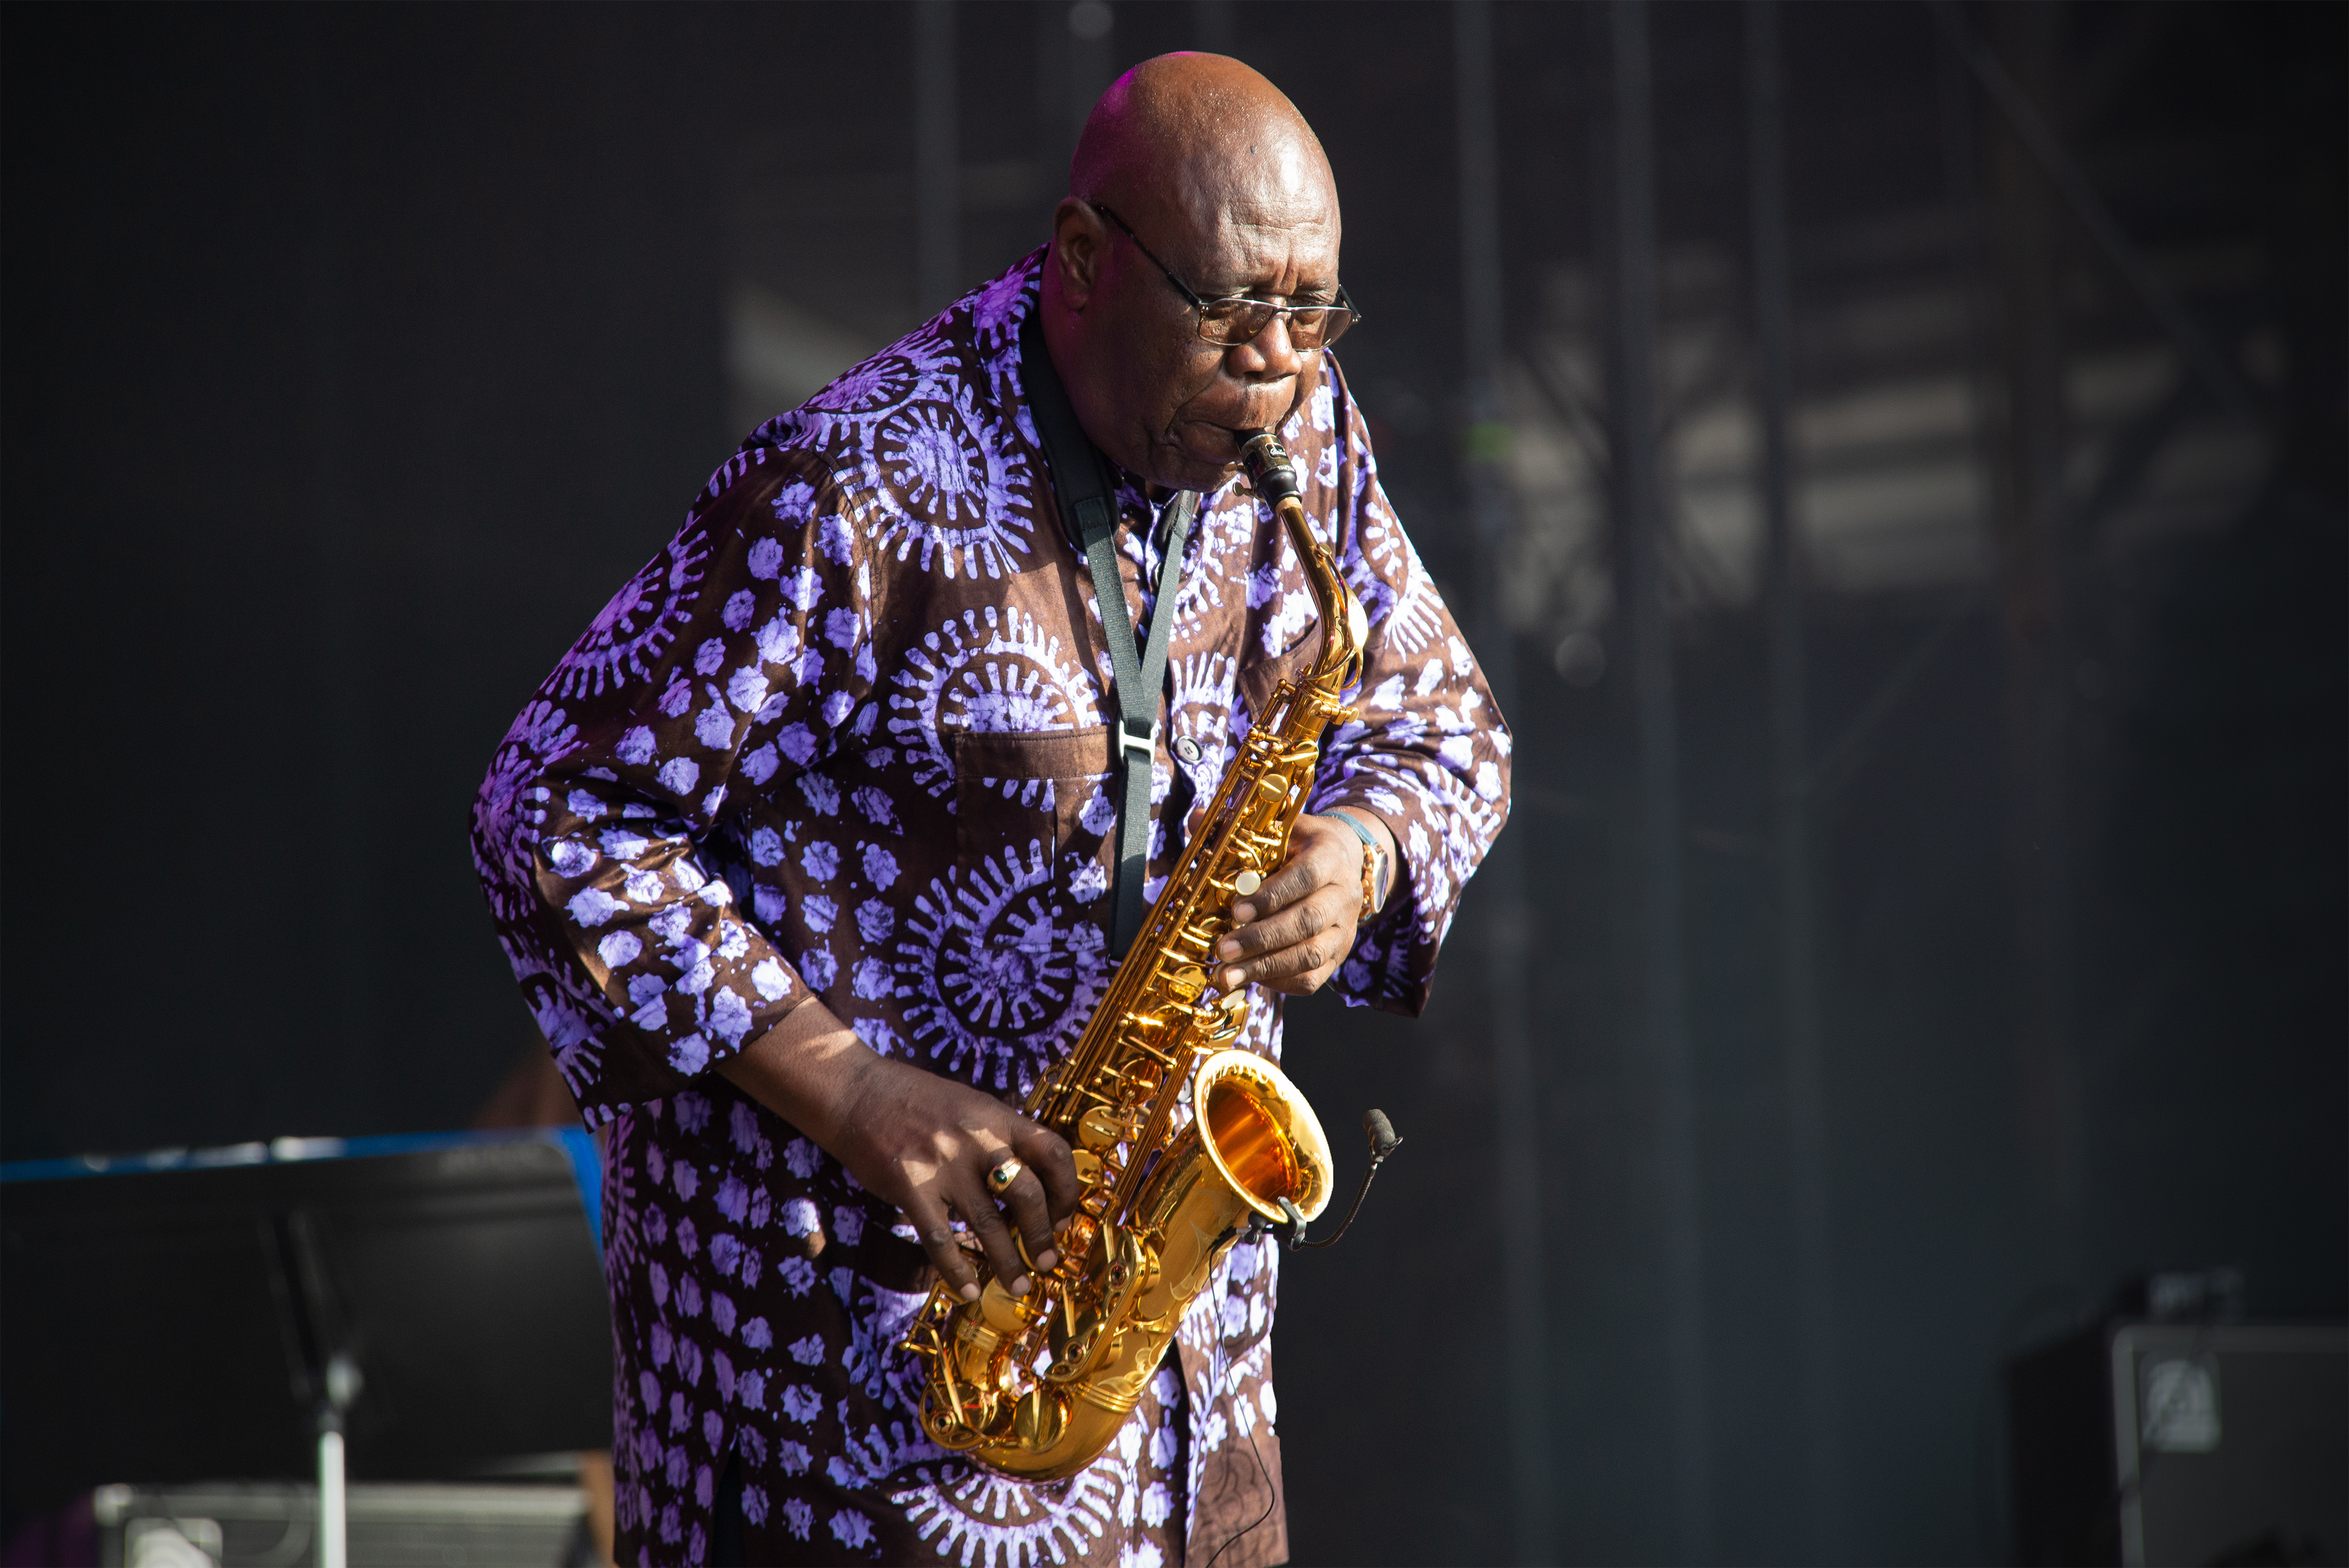     Le saxophoniste Manu Dibango est décédé des suites d'une infection au covid- 19

